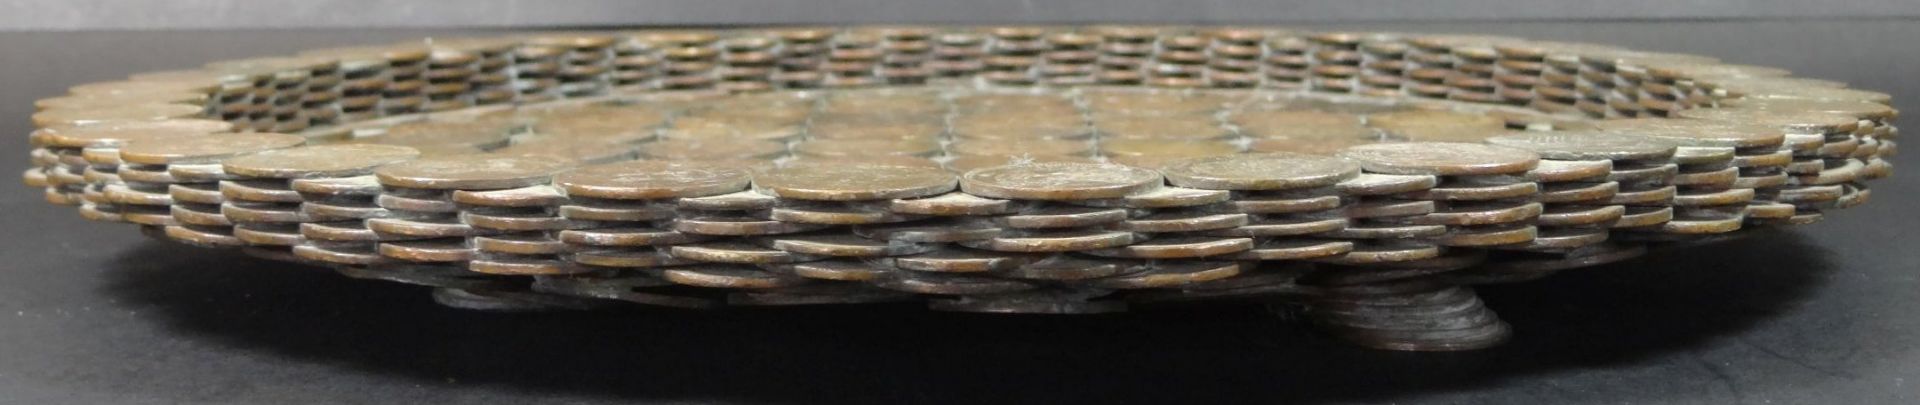 grosse Schale aus ca. 700 chinesischen Münzen um 1905, z.B. TAI-CHING TI-KUO Kupfer Münze 10 CASH - Bild 2 aus 10